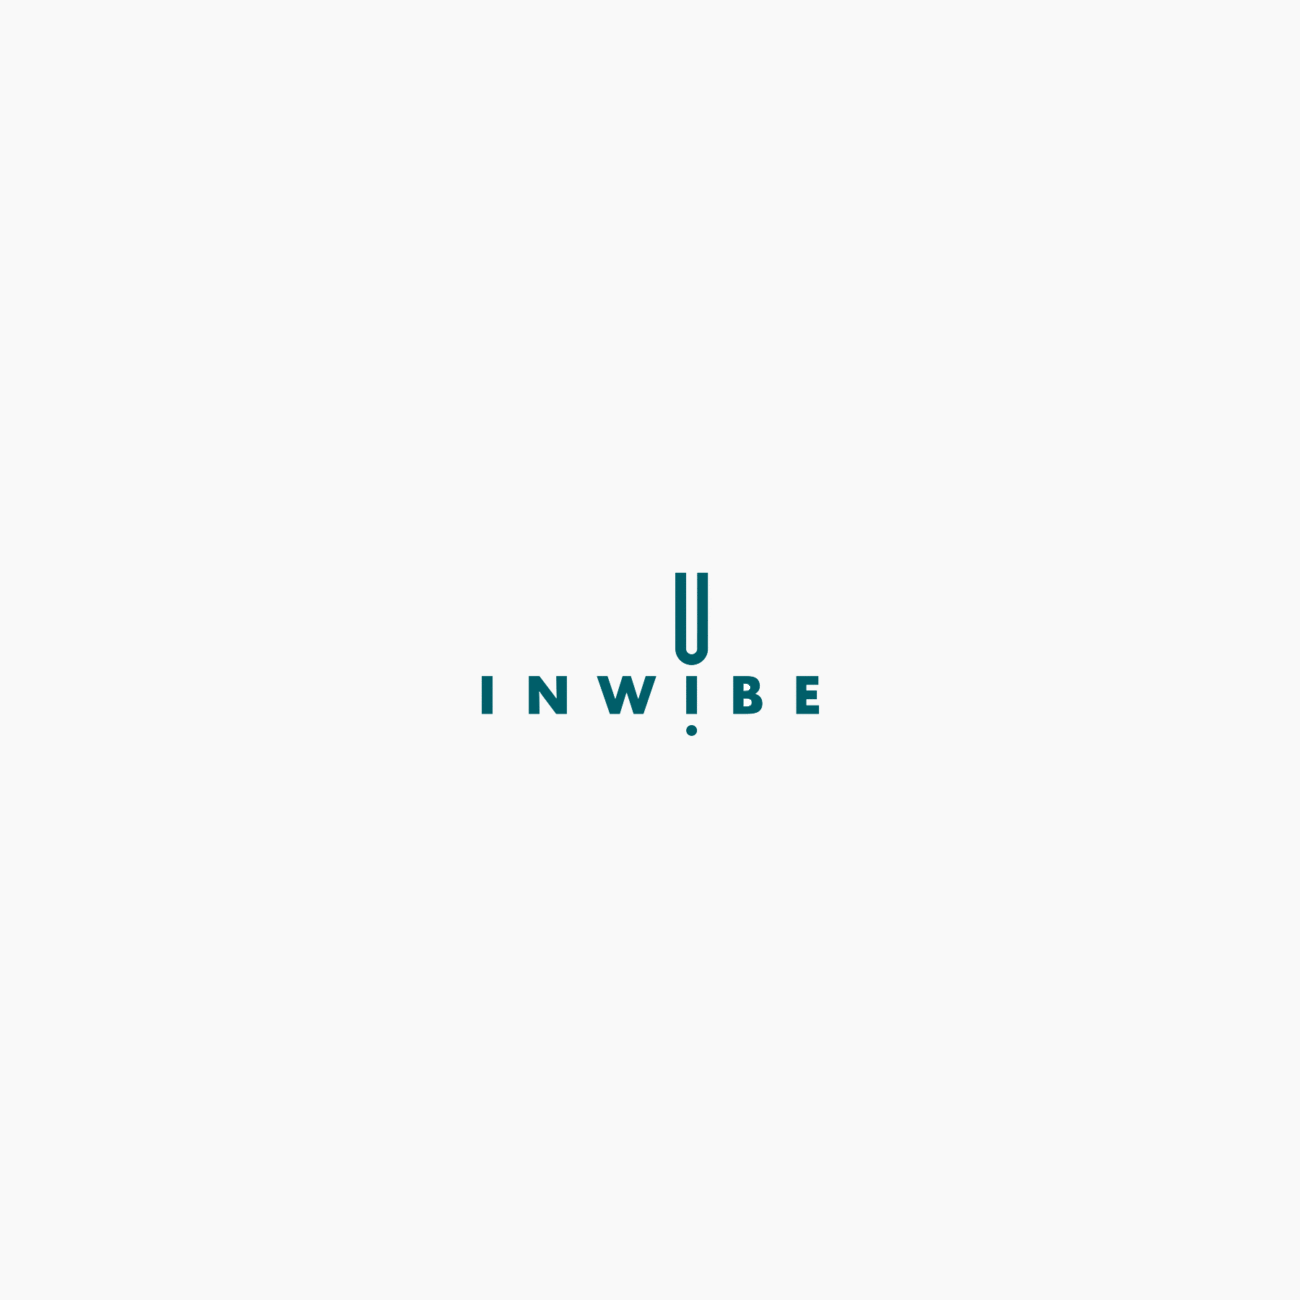 Inwibe progetto grafico logotipo